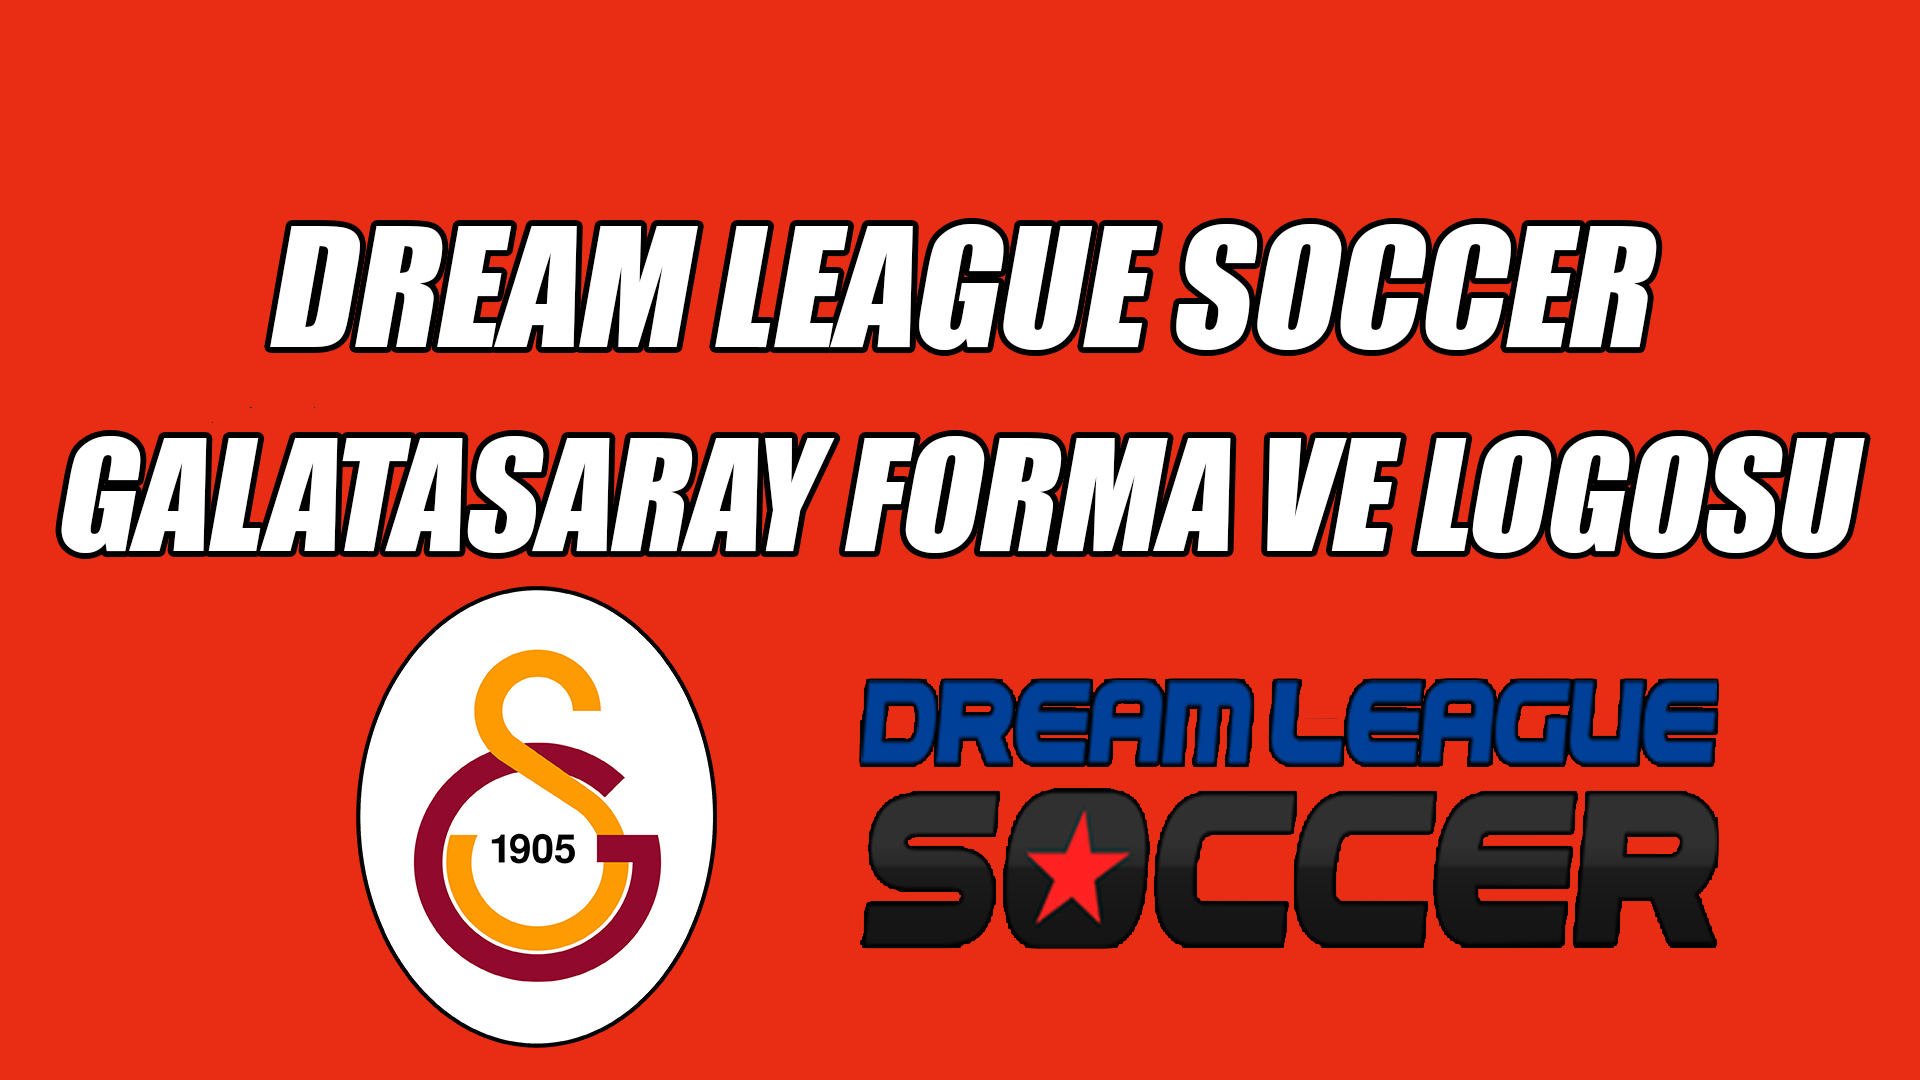 Dream League Soccer Galatasaray Forma Ve Logosu(2020 - 2021)